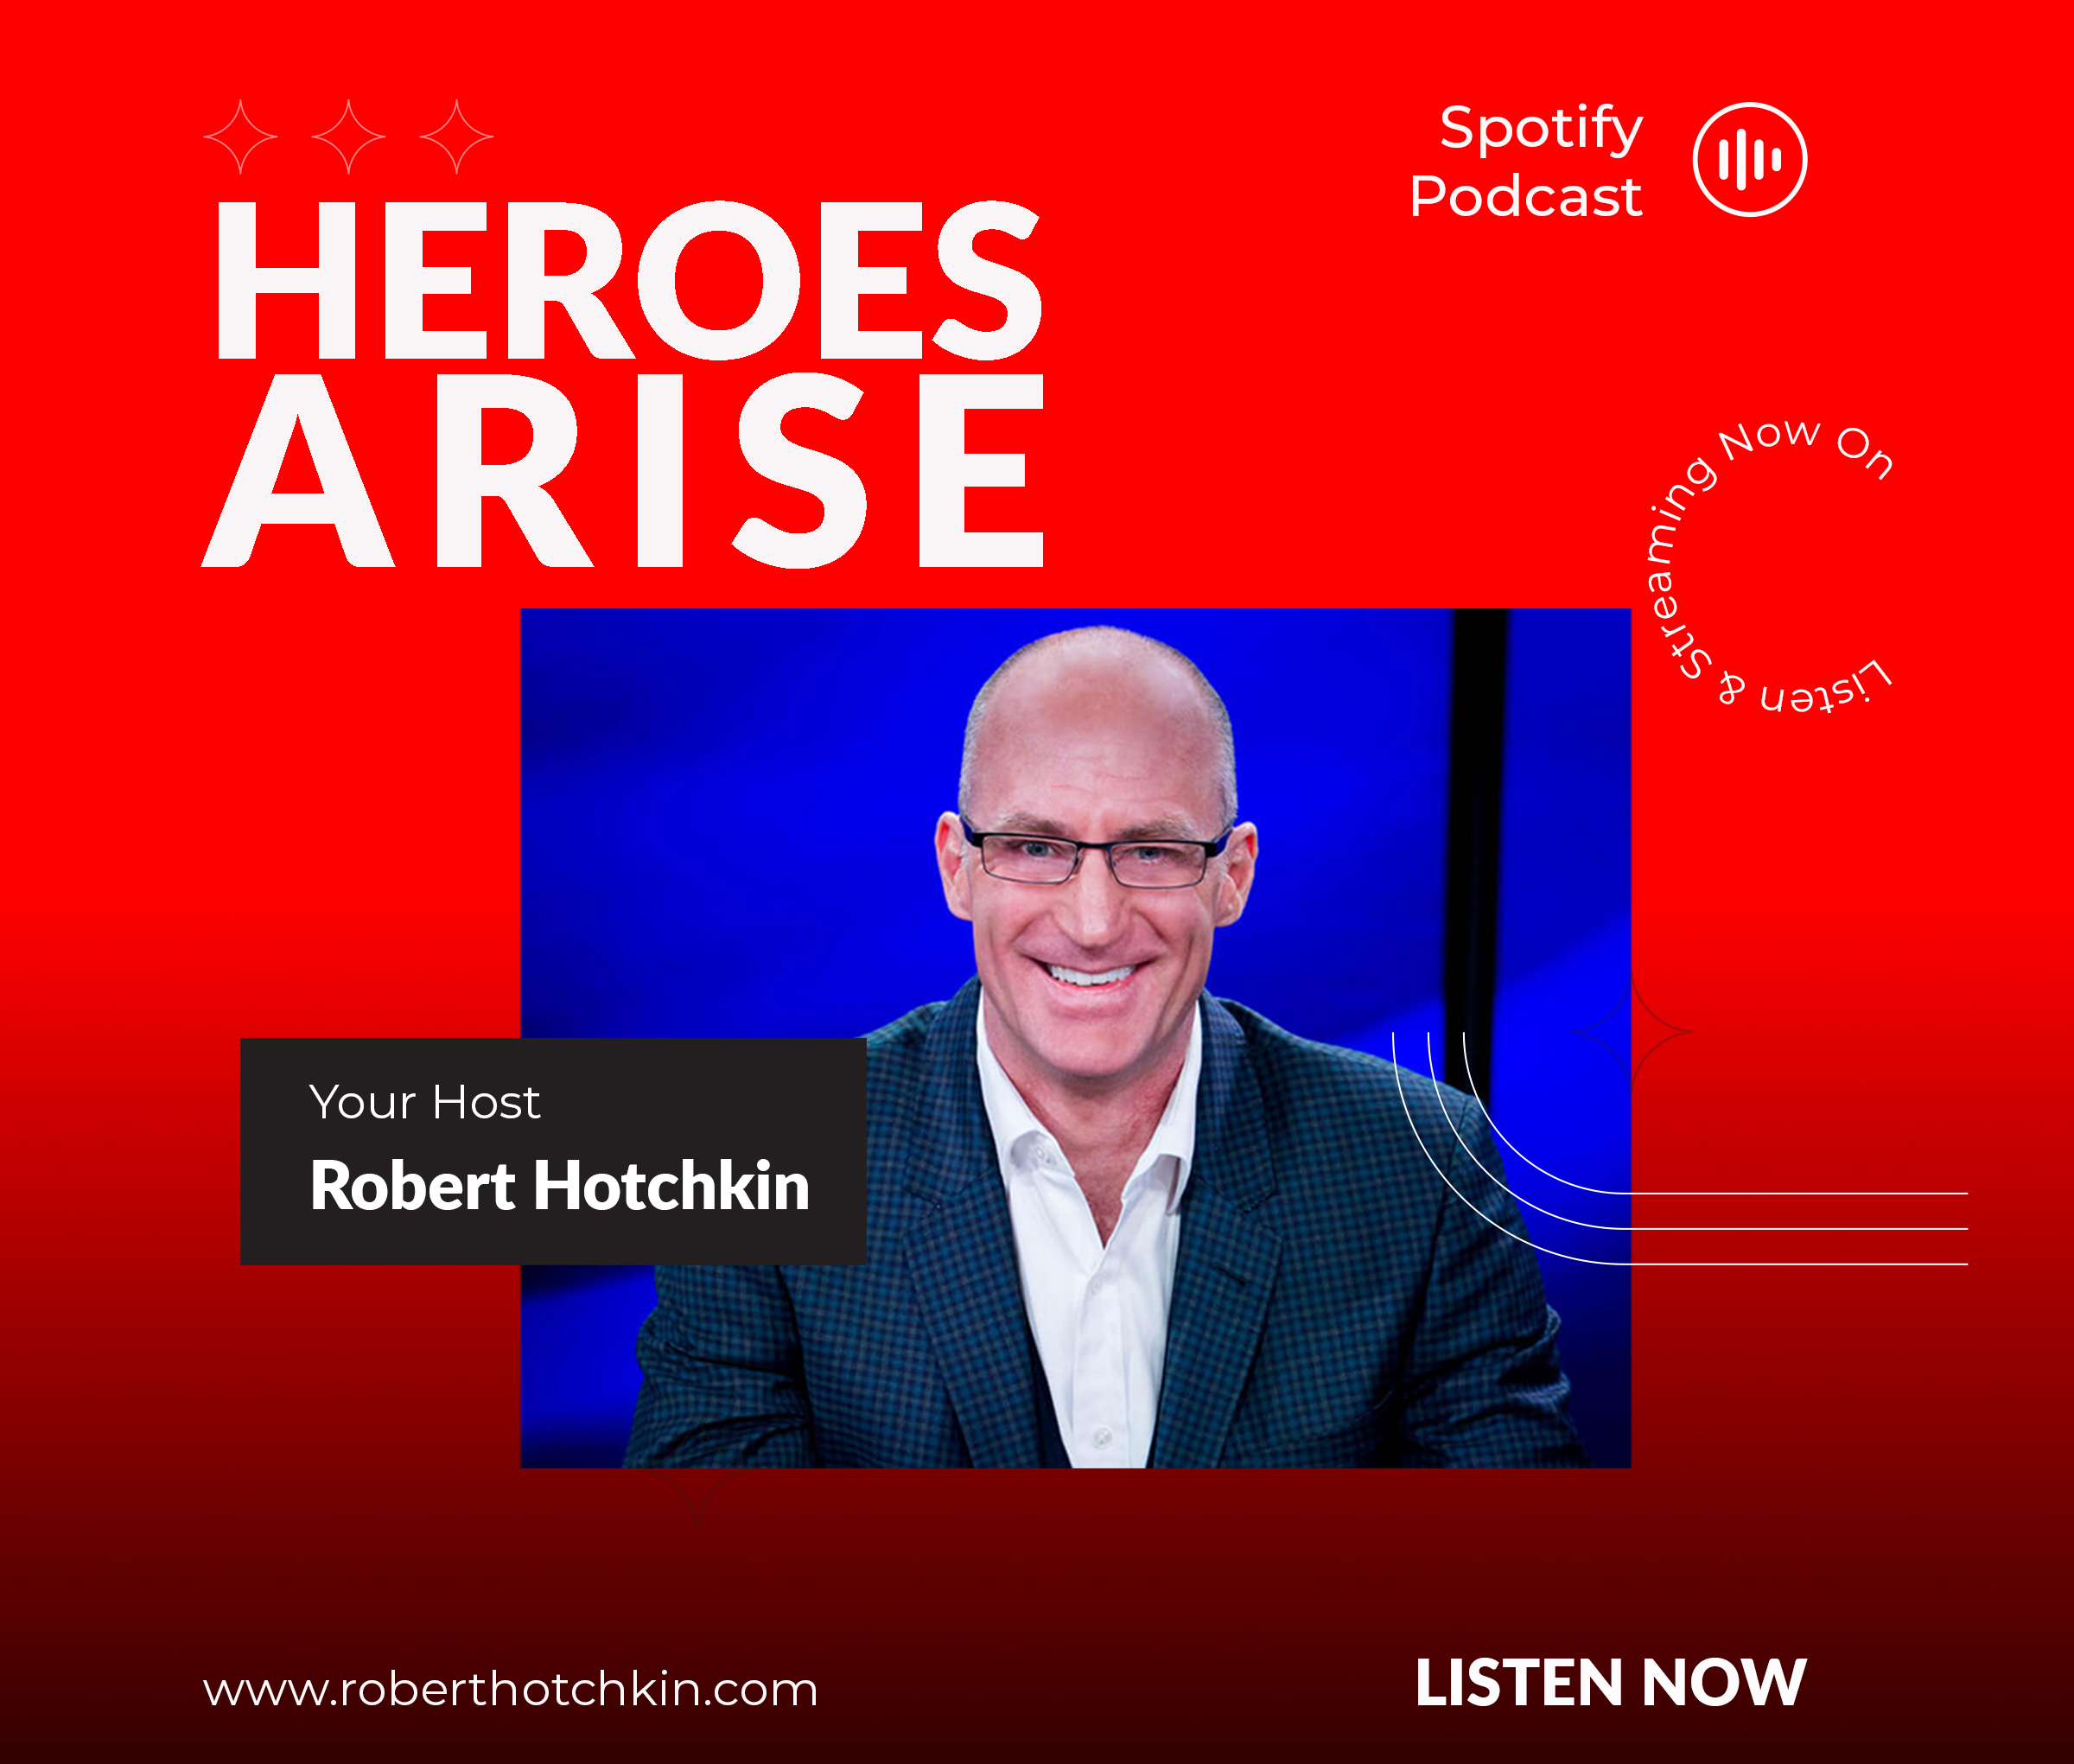 Heroes-Arise-Spotify